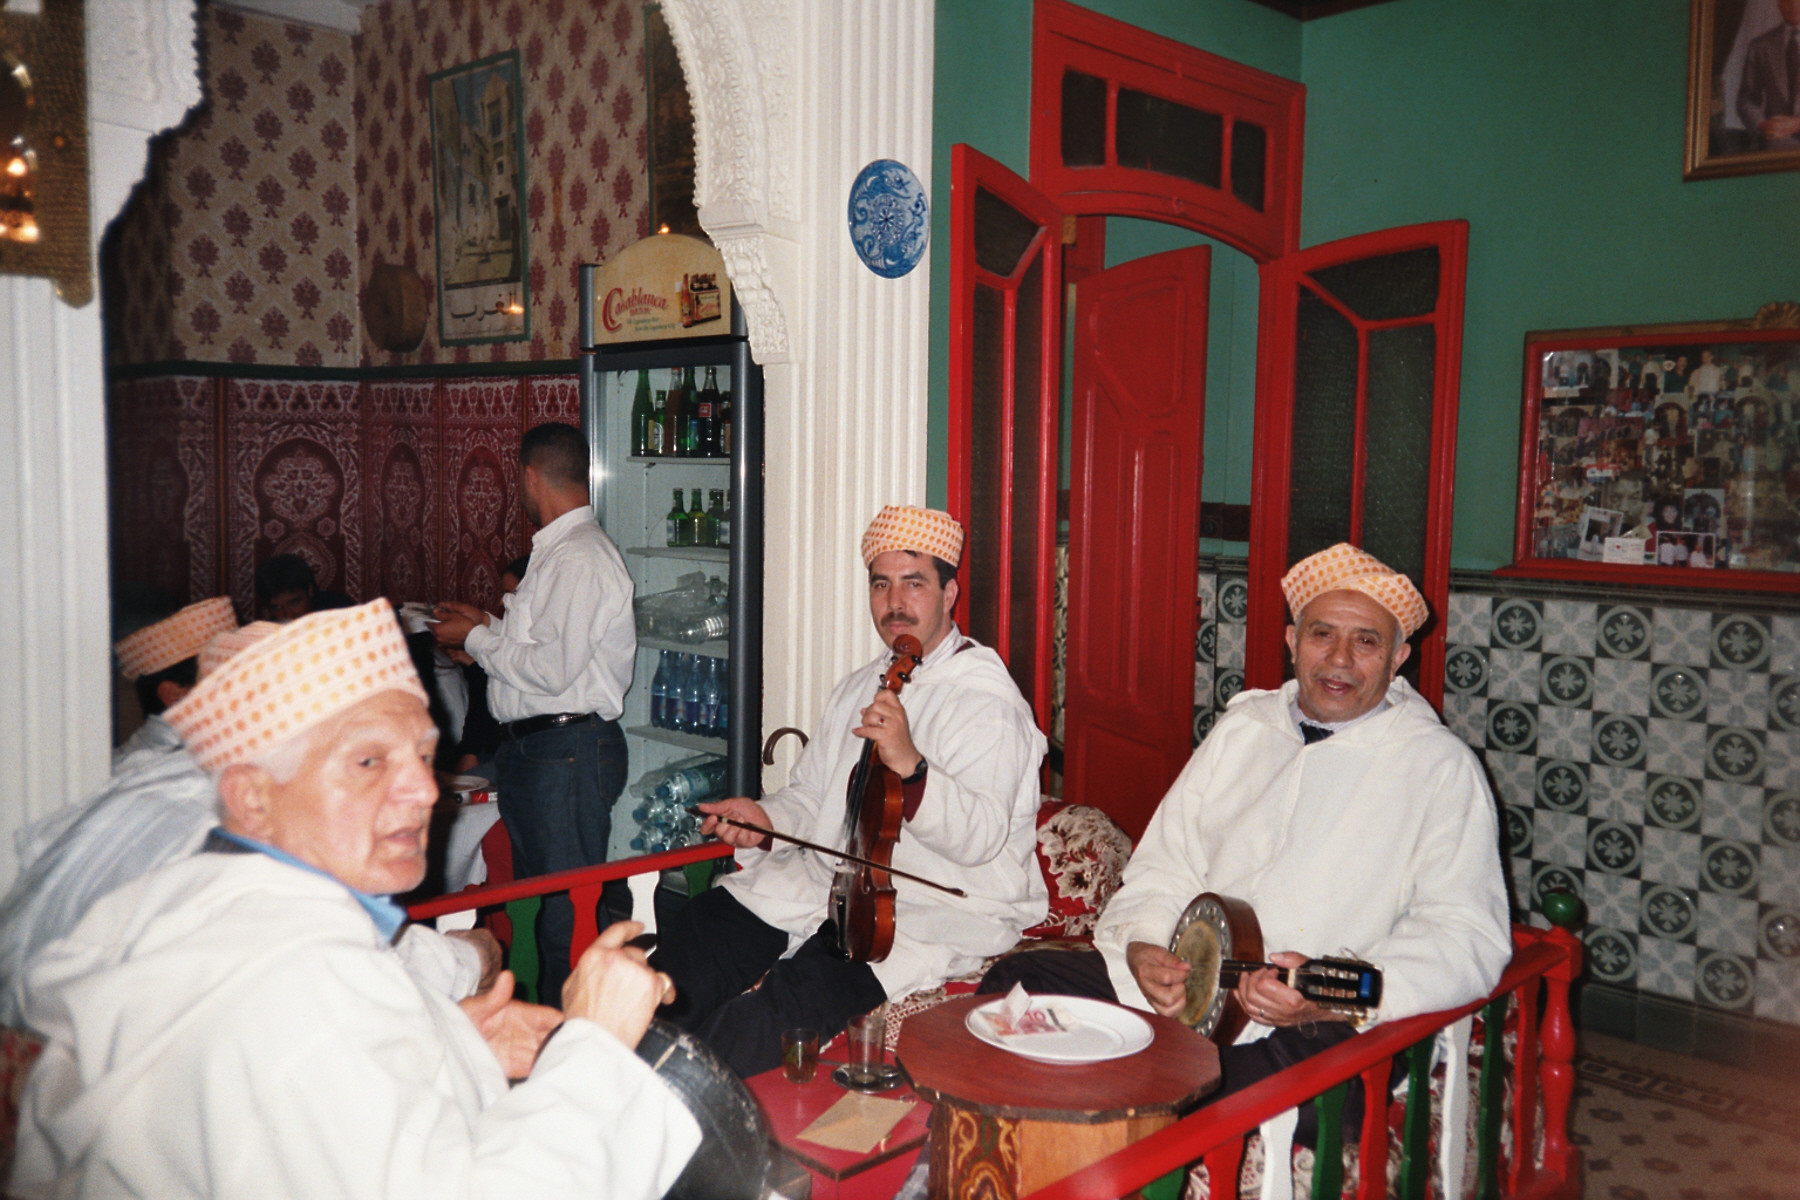 Marokkanische Untermalung beim Dinner - Die Band spielte so gut wie sie alt war.